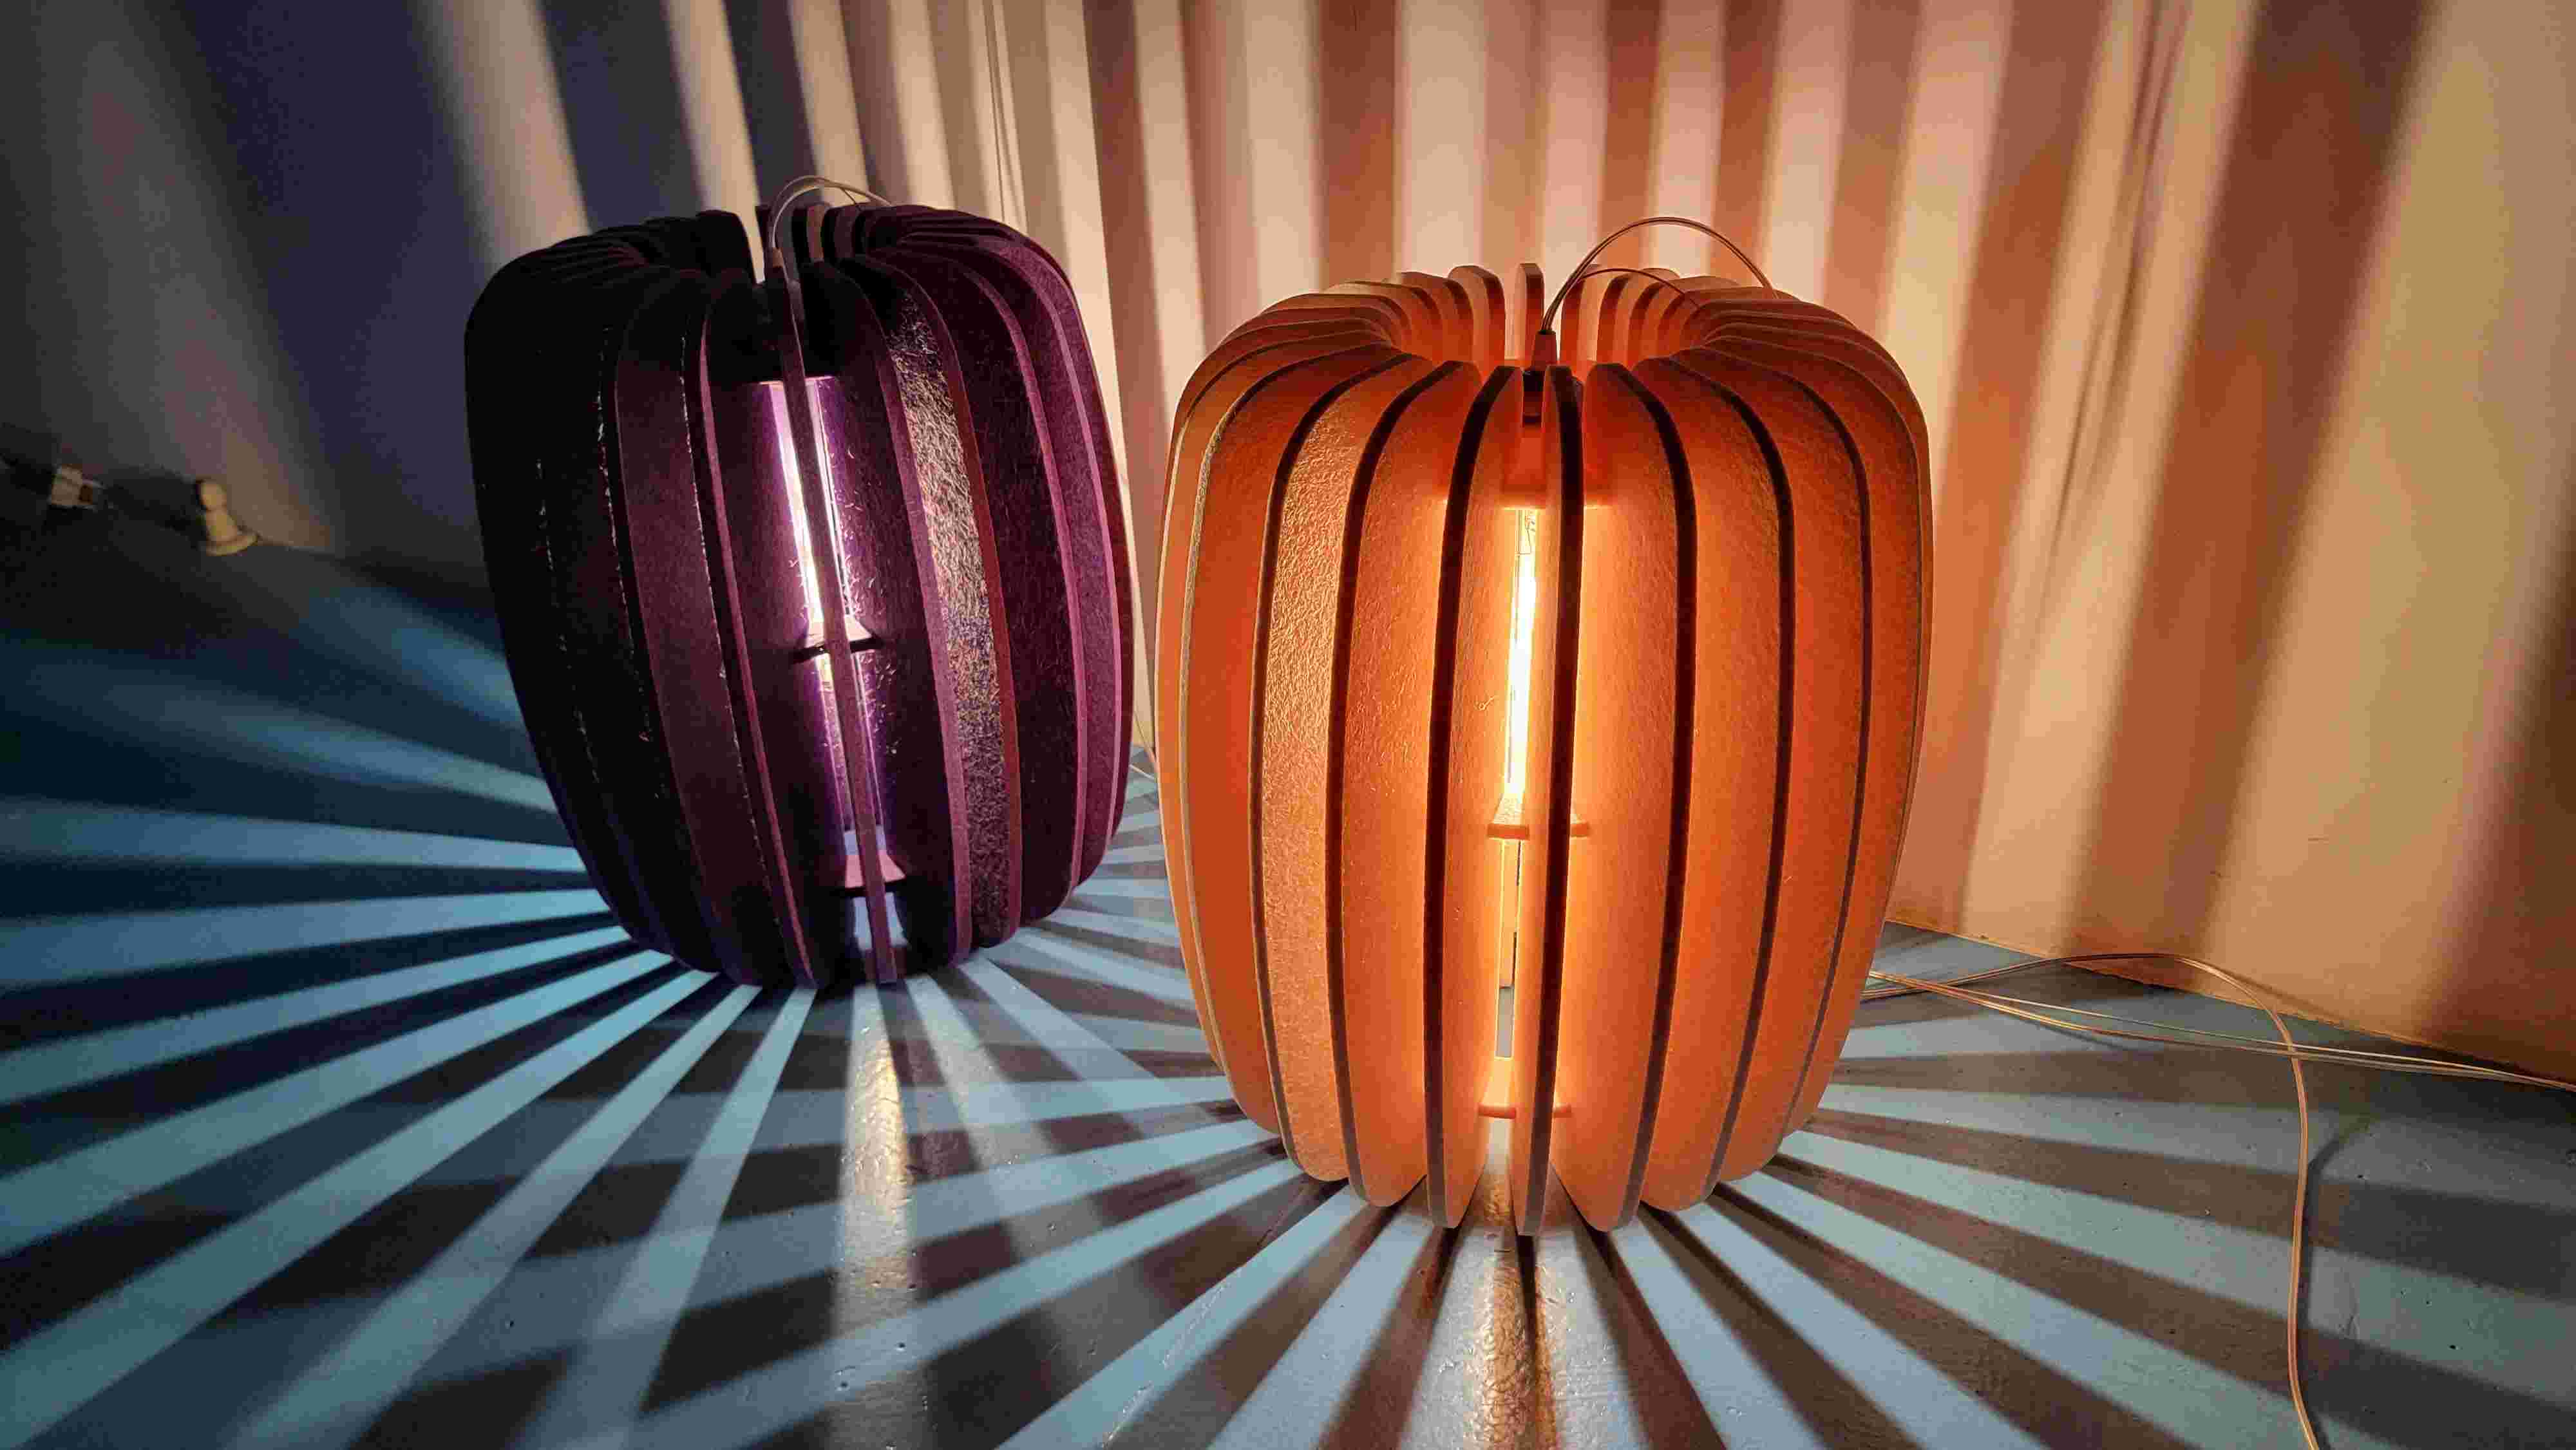 Modern decorative light Pumpkin Light acoustic fixture LL0412SAC-D19H23